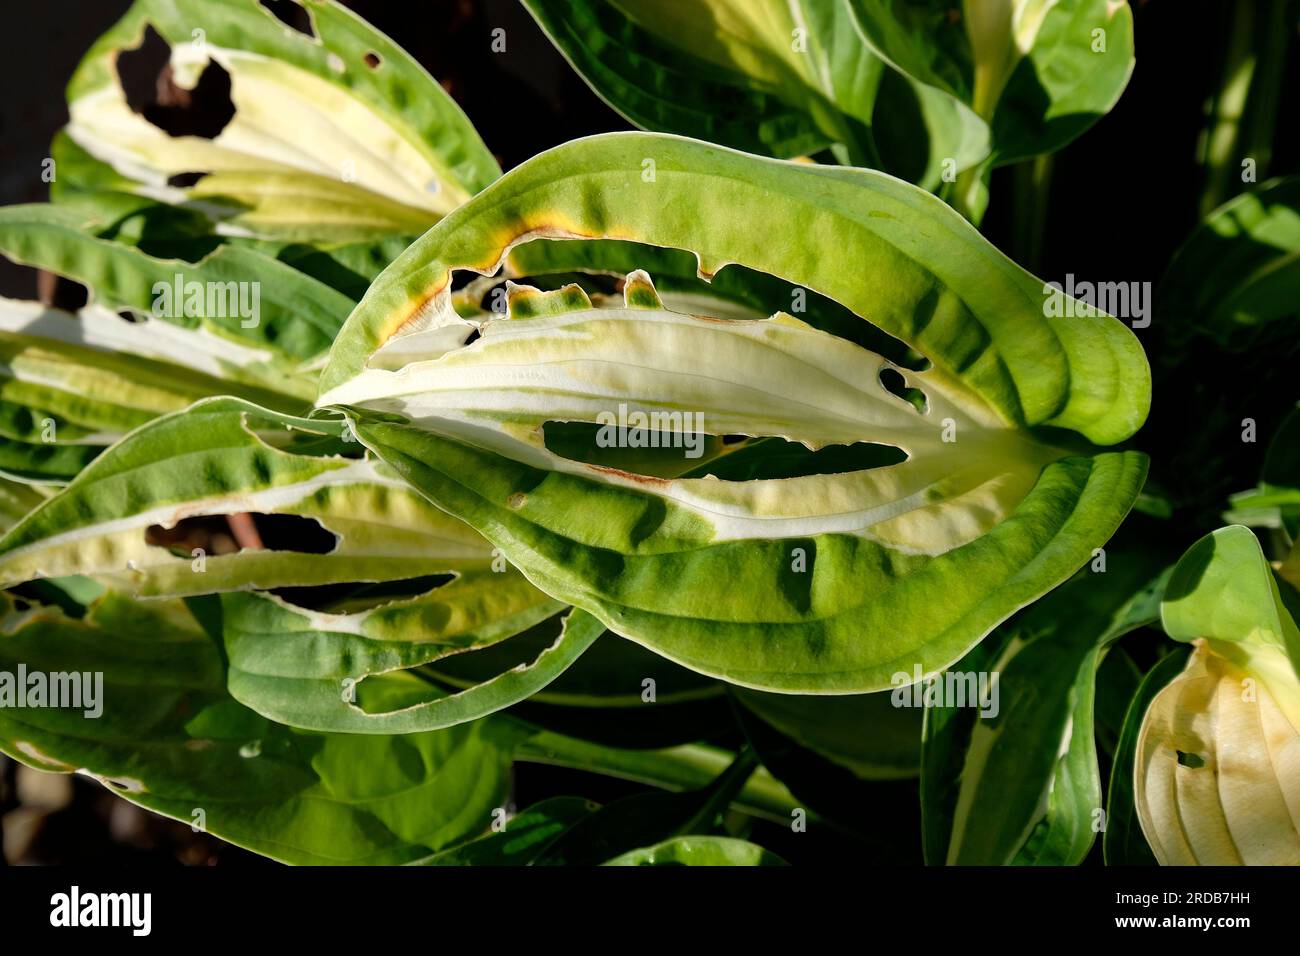 Slug aß eine Hosta-Pflanze in einem englischen Garten, norfolk, england Stockfoto